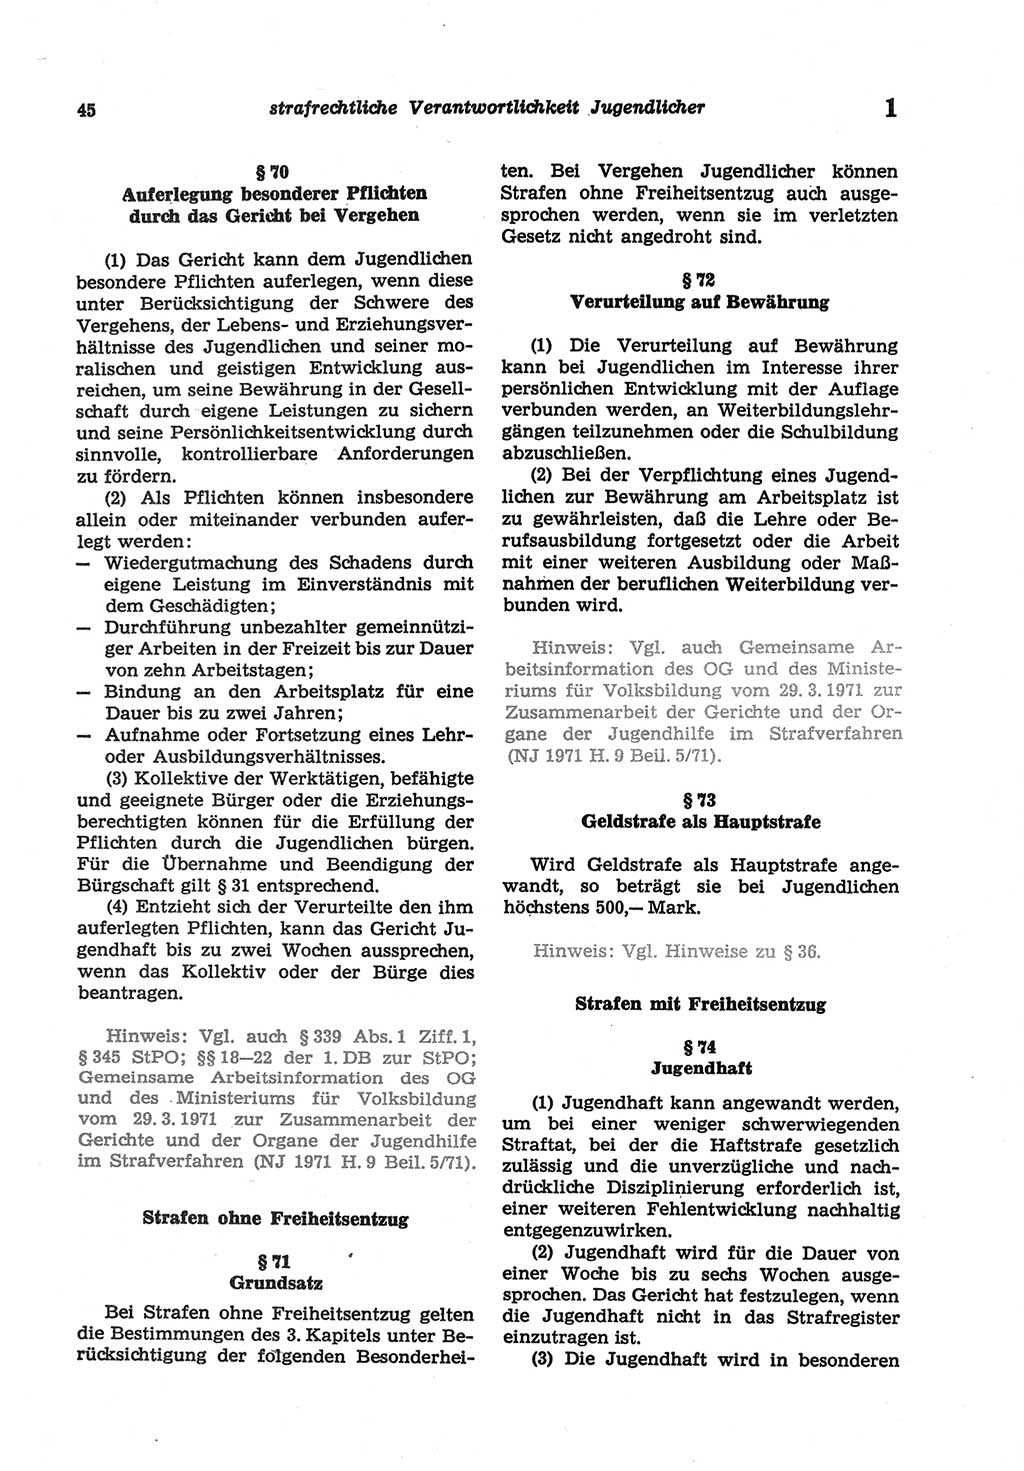 Strafgesetzbuch (StGB) der Deutschen Demokratischen Republik (DDR) und angrenzende Gesetze und Bestimmungen 1977, Seite 45 (StGB DDR Ges. Best. 1977, S. 45)